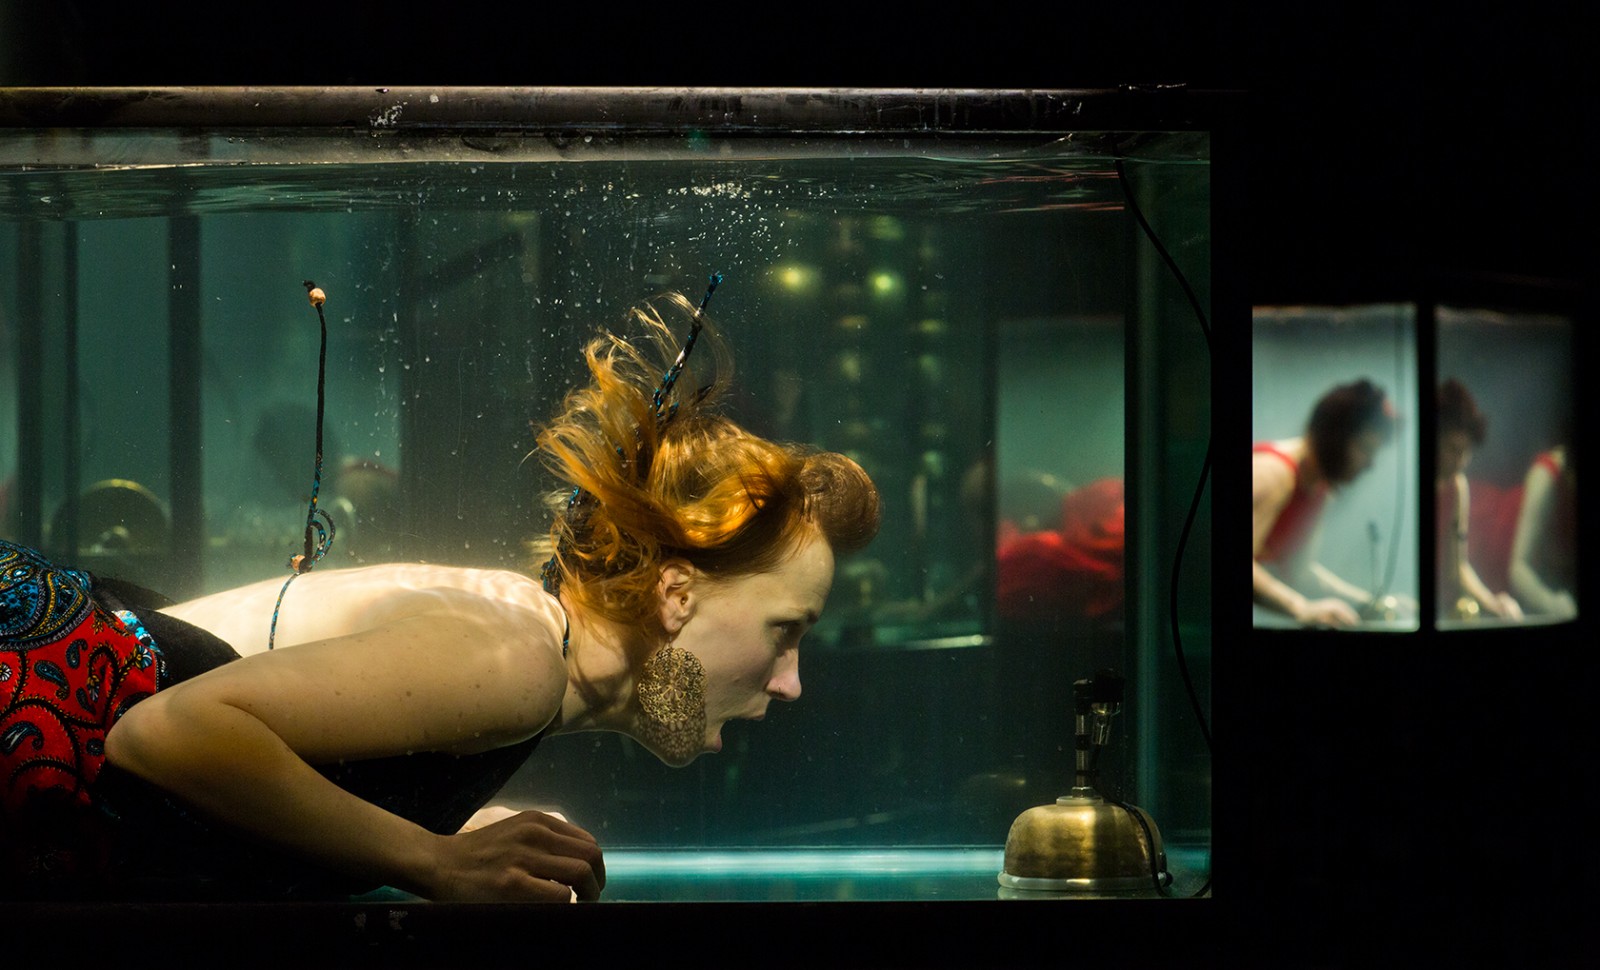 Mesterværk af en anden verden</br>Nanna Bech synger mod undervandsmikrofonen</br>Foto: Jens Peter Engedal